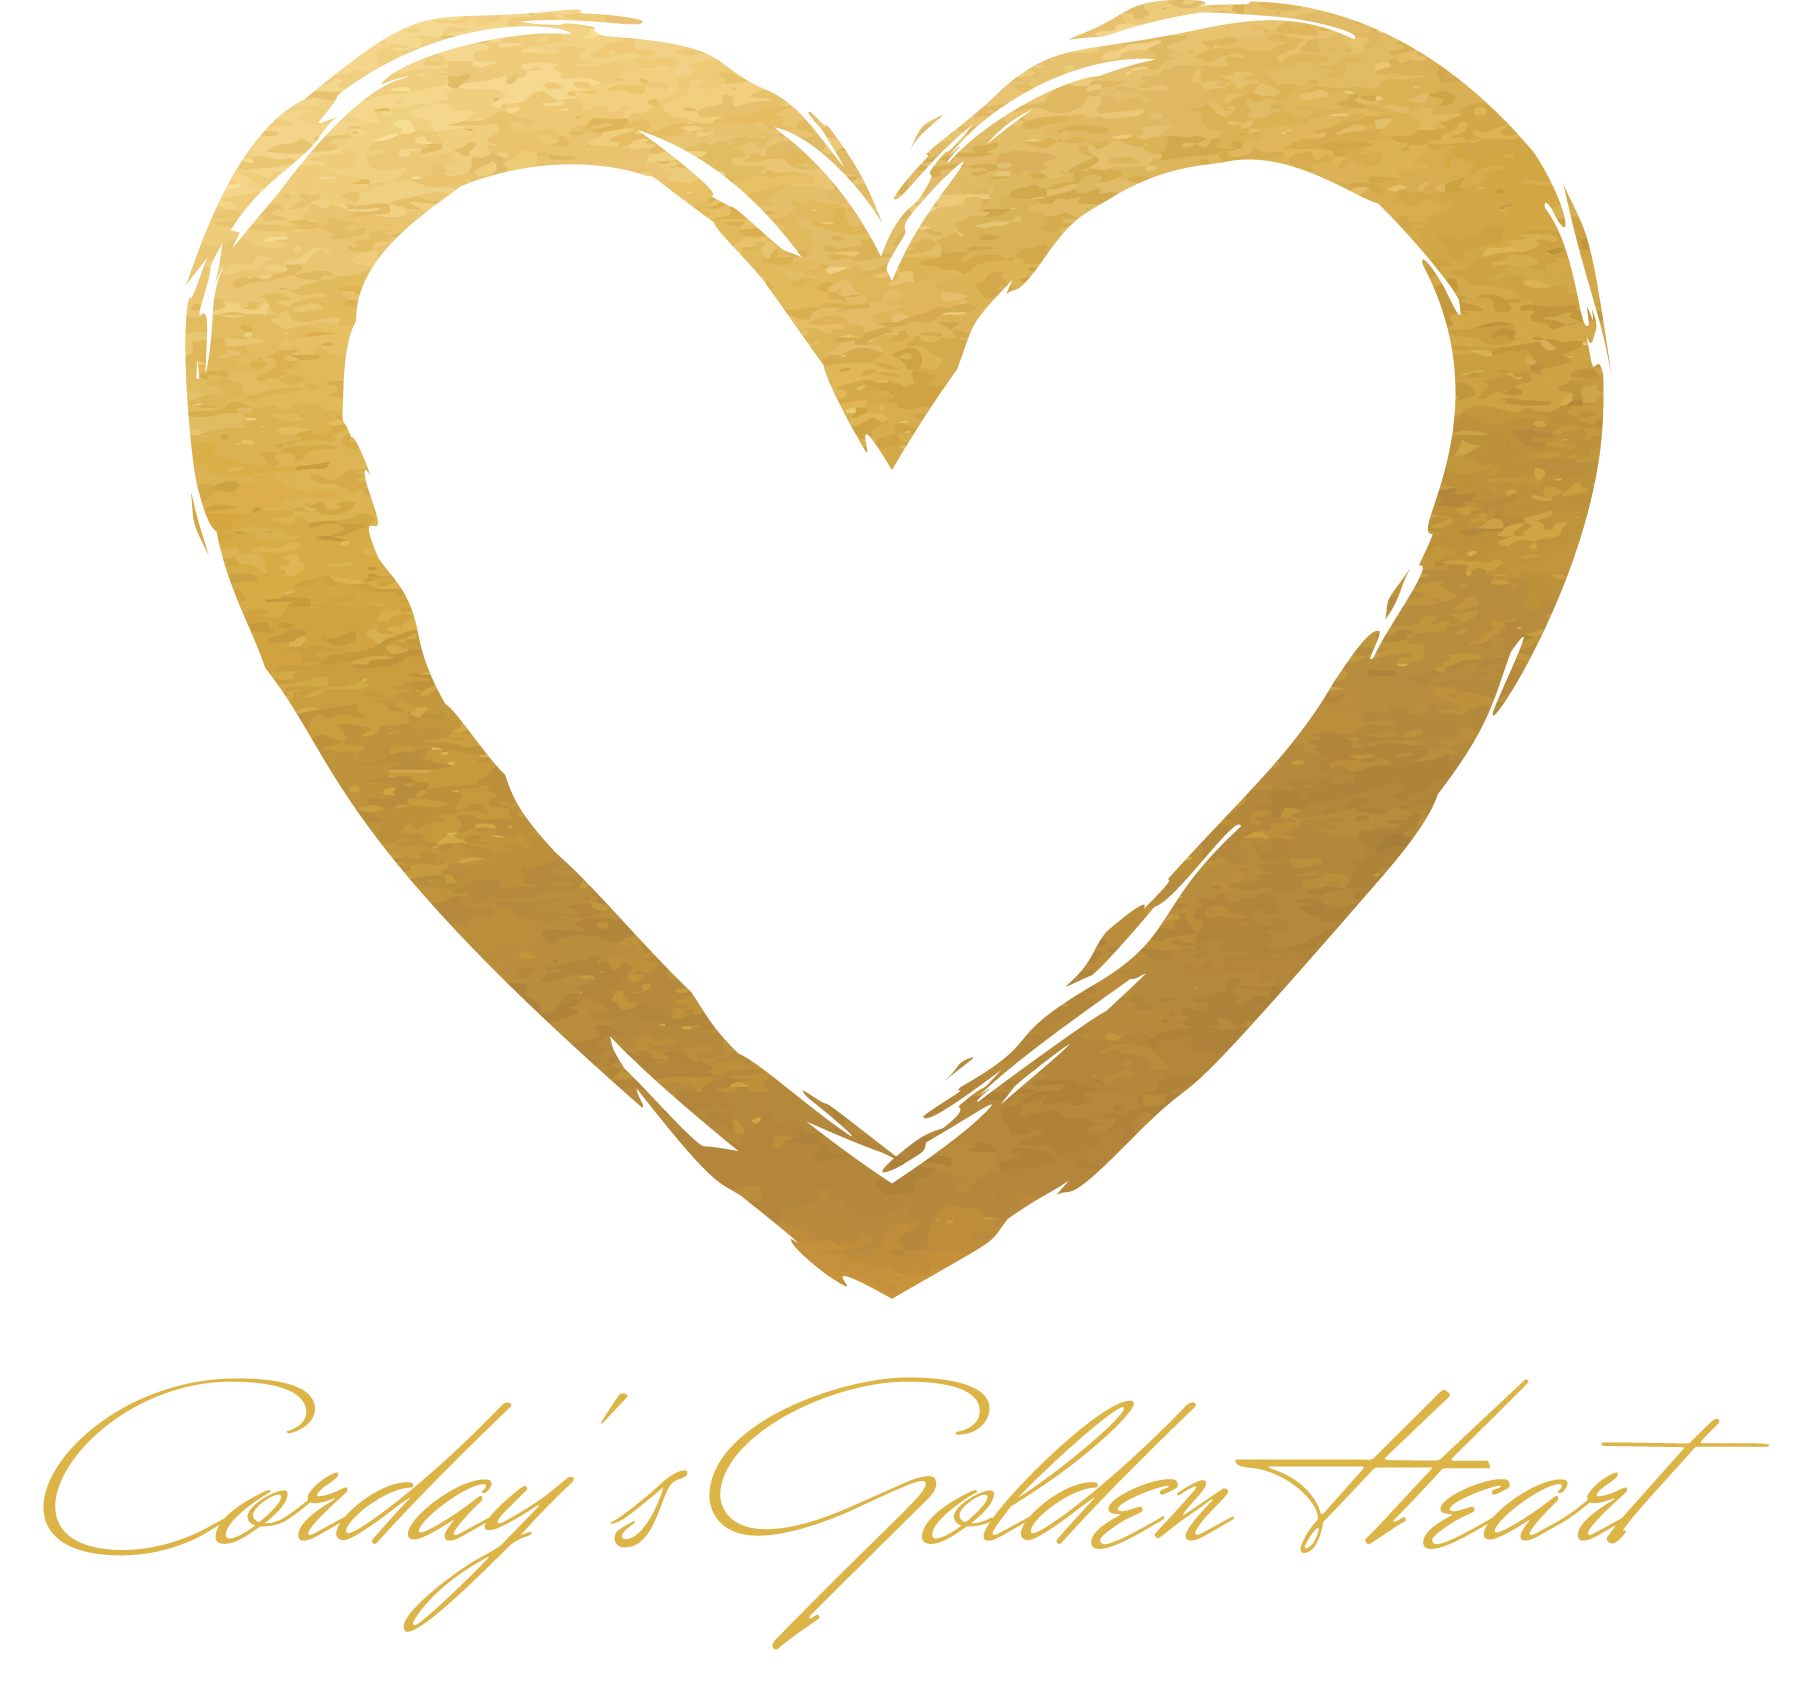 Corday's Golden Heart